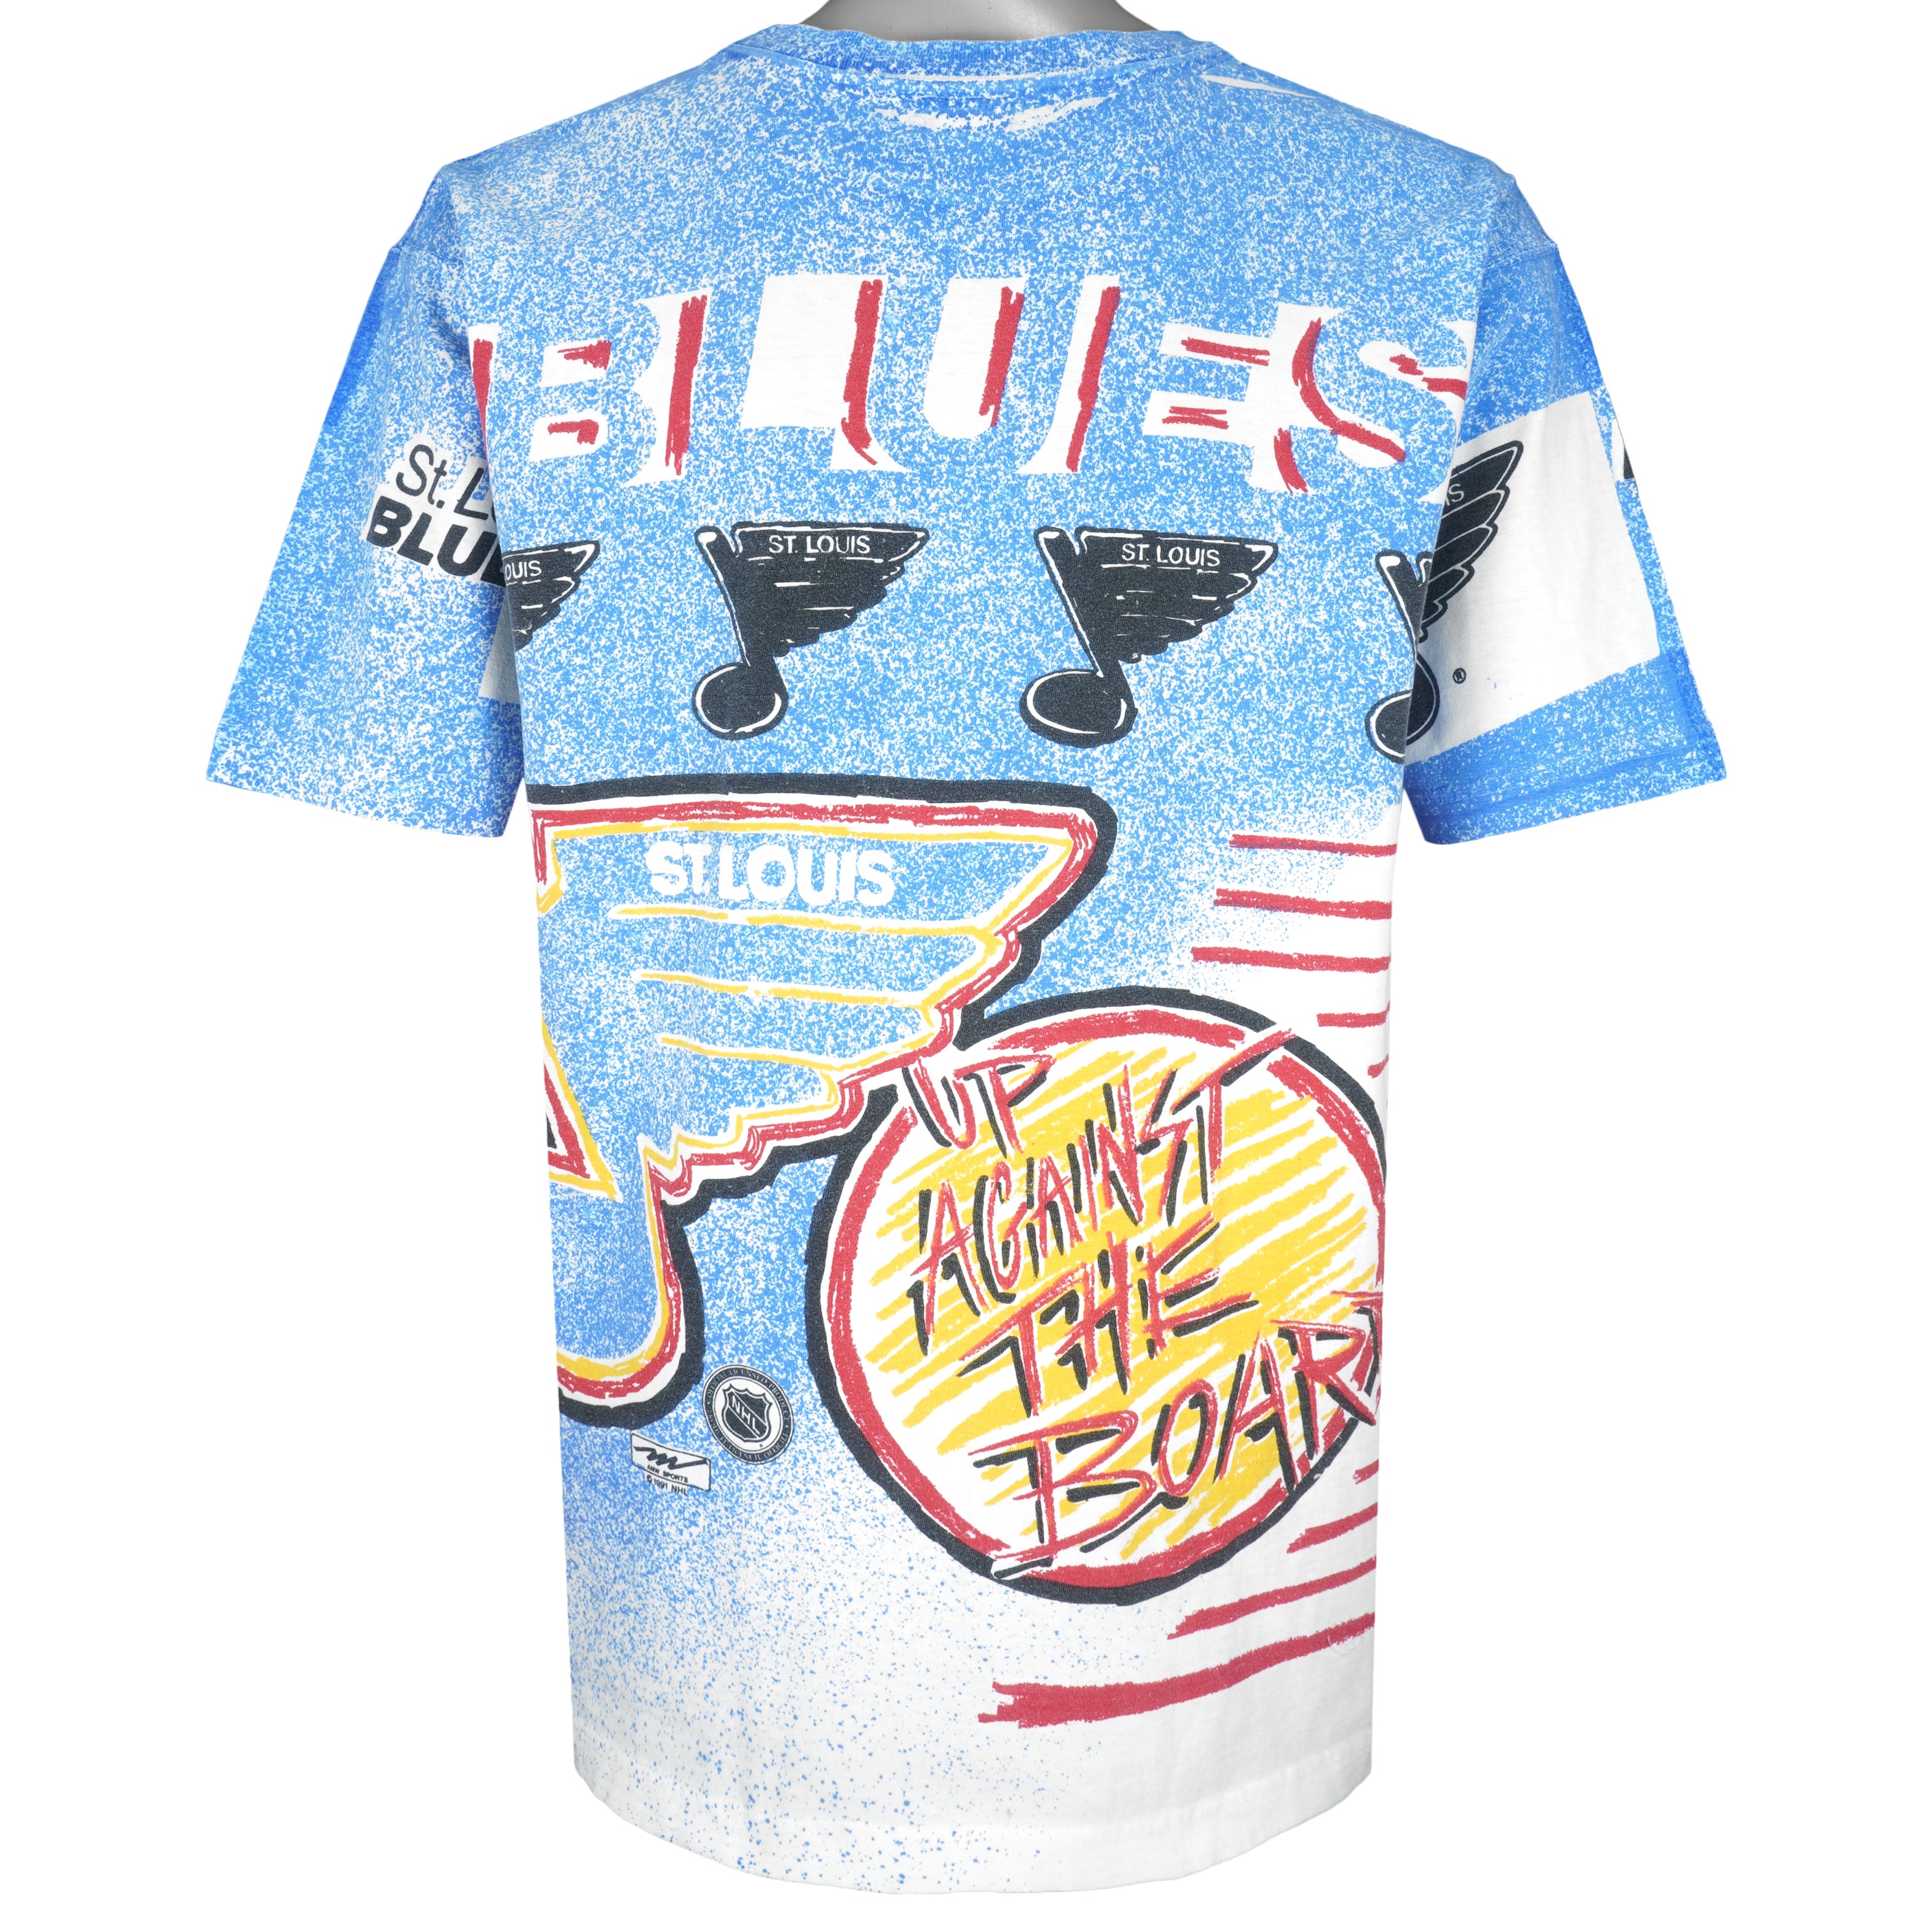 St. Louis Blues Jerseys & Teamwear, NHL Merchandise